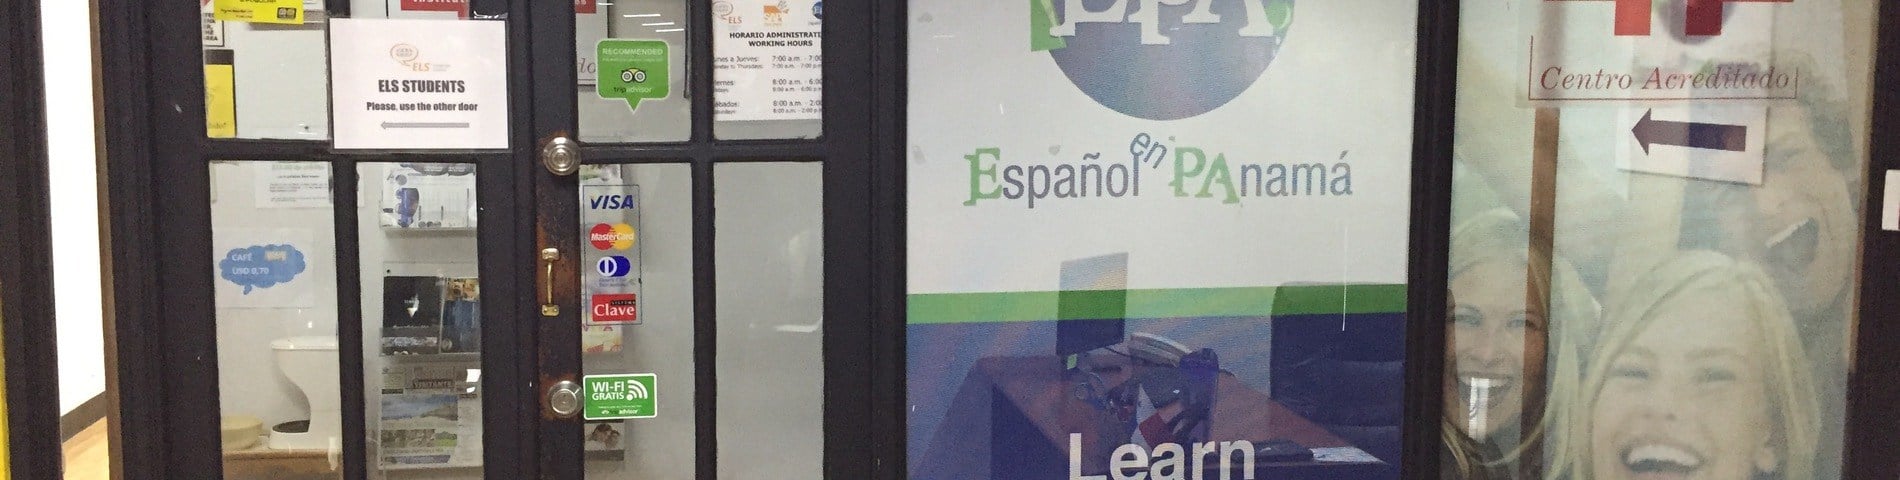 EPA! Español en Panamá画像1